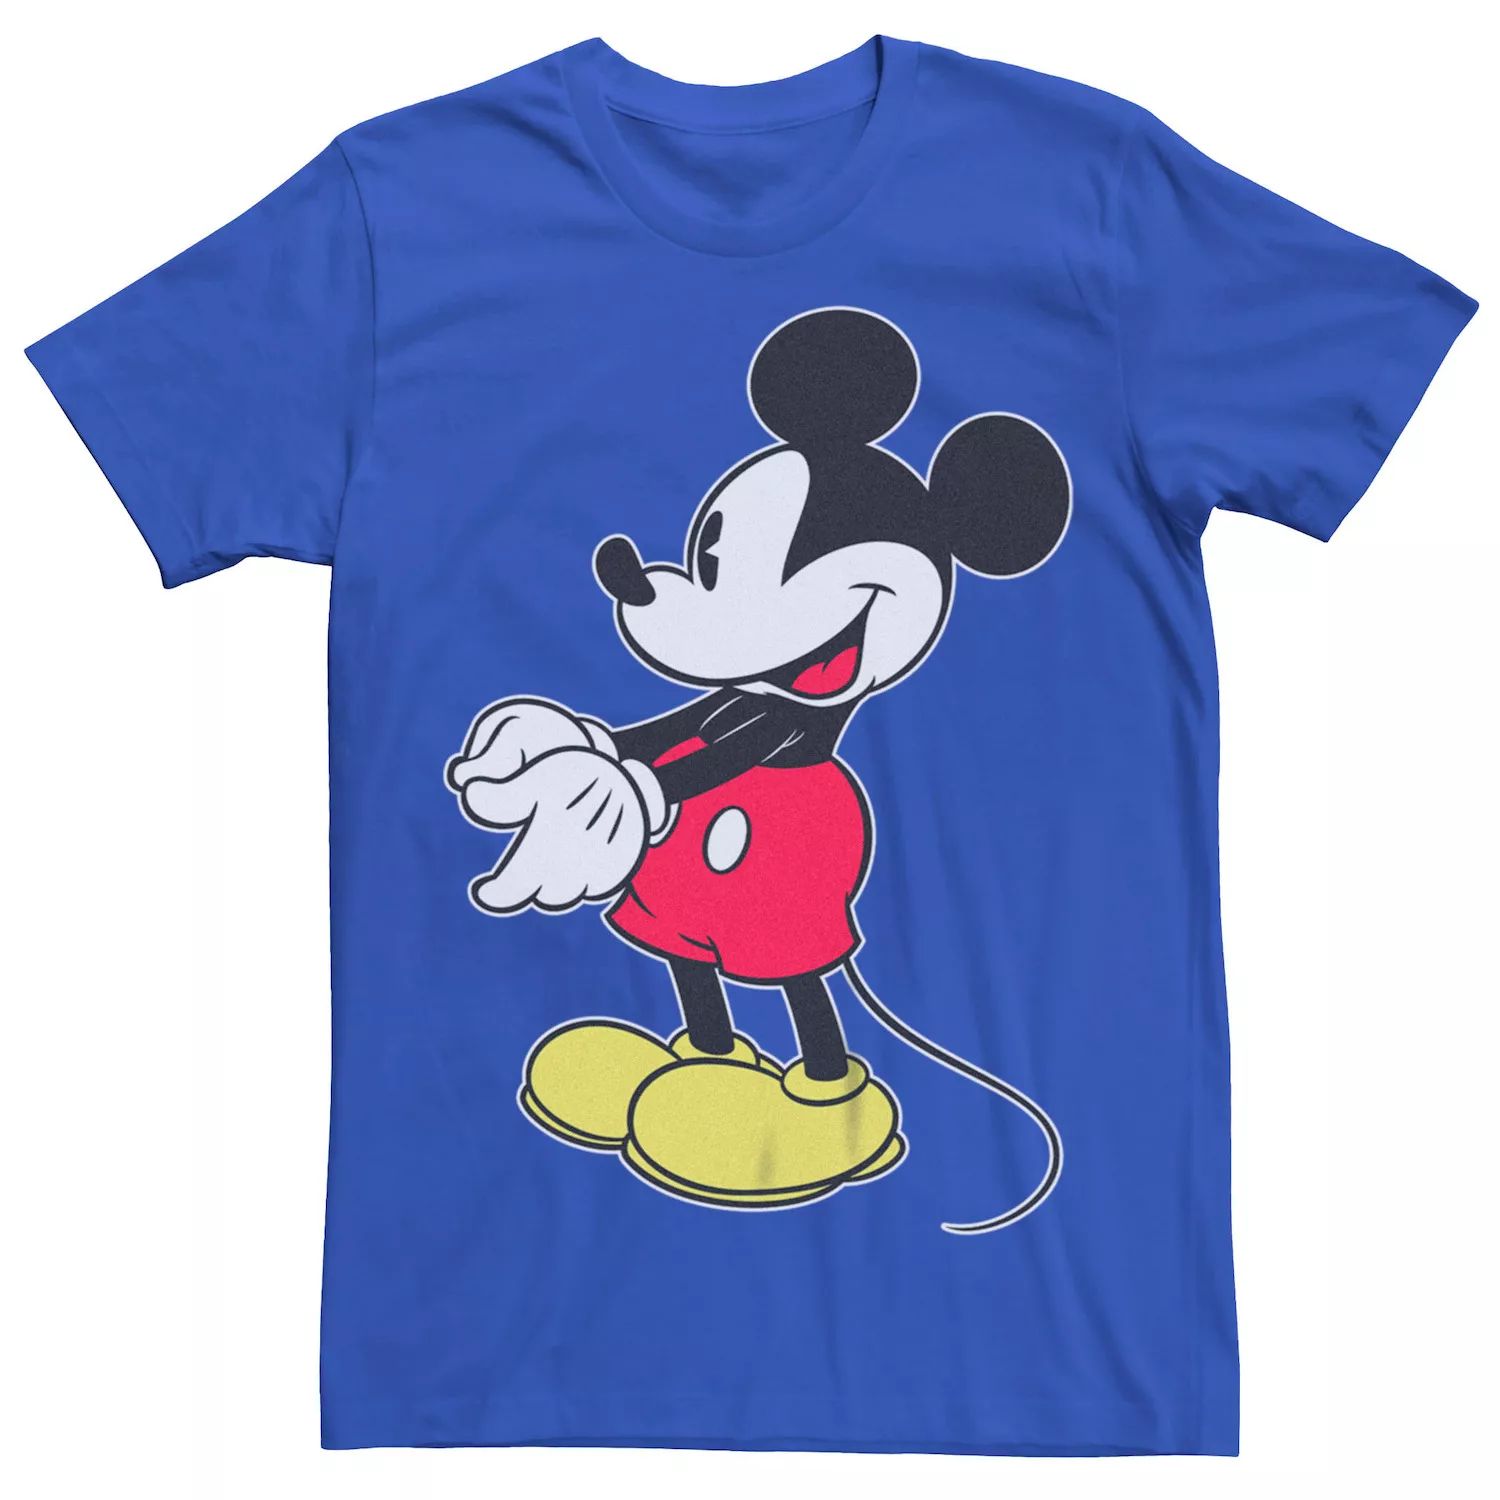 Мужская футболка Disney с Микки Маусом Licensed Character футболка с надписью я спросил с предложением помолвки с микки маусом от disney licensed character